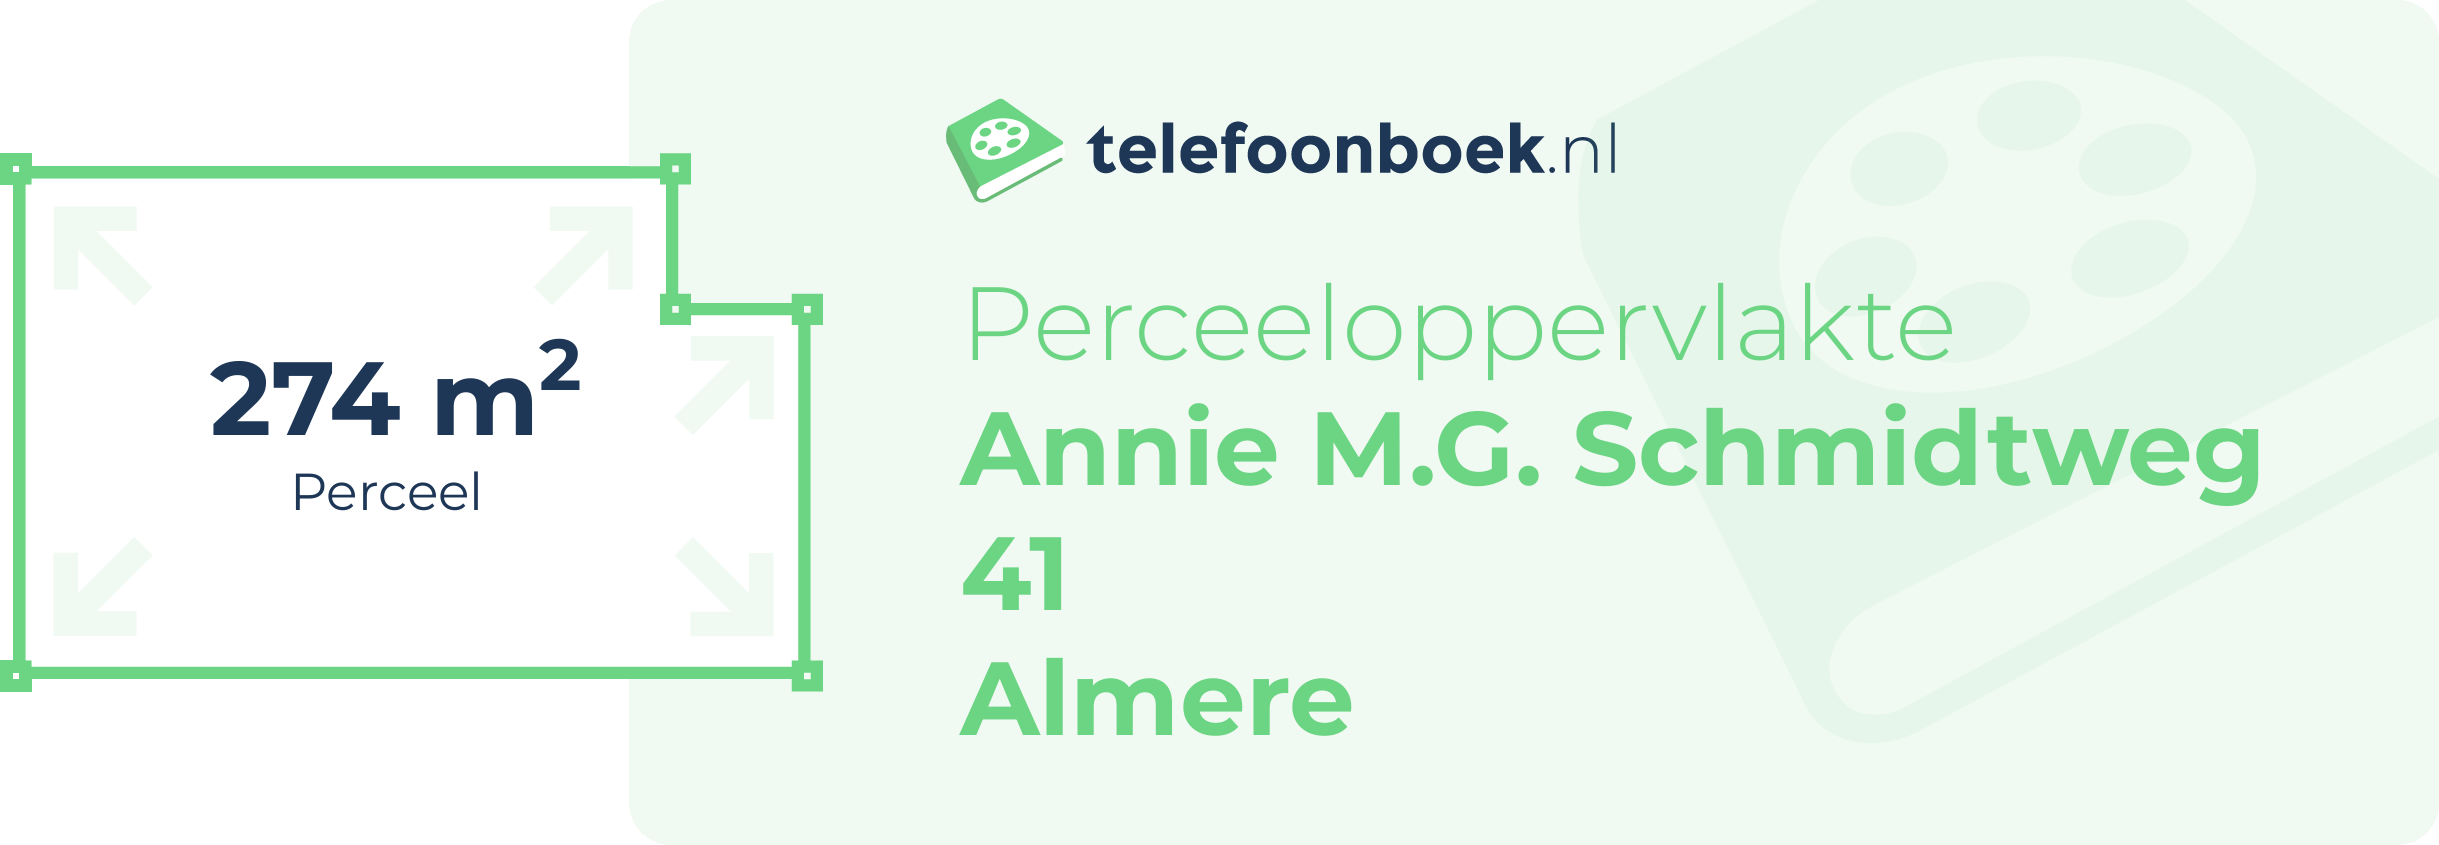 Perceeloppervlakte Annie M.G. Schmidtweg 41 Almere